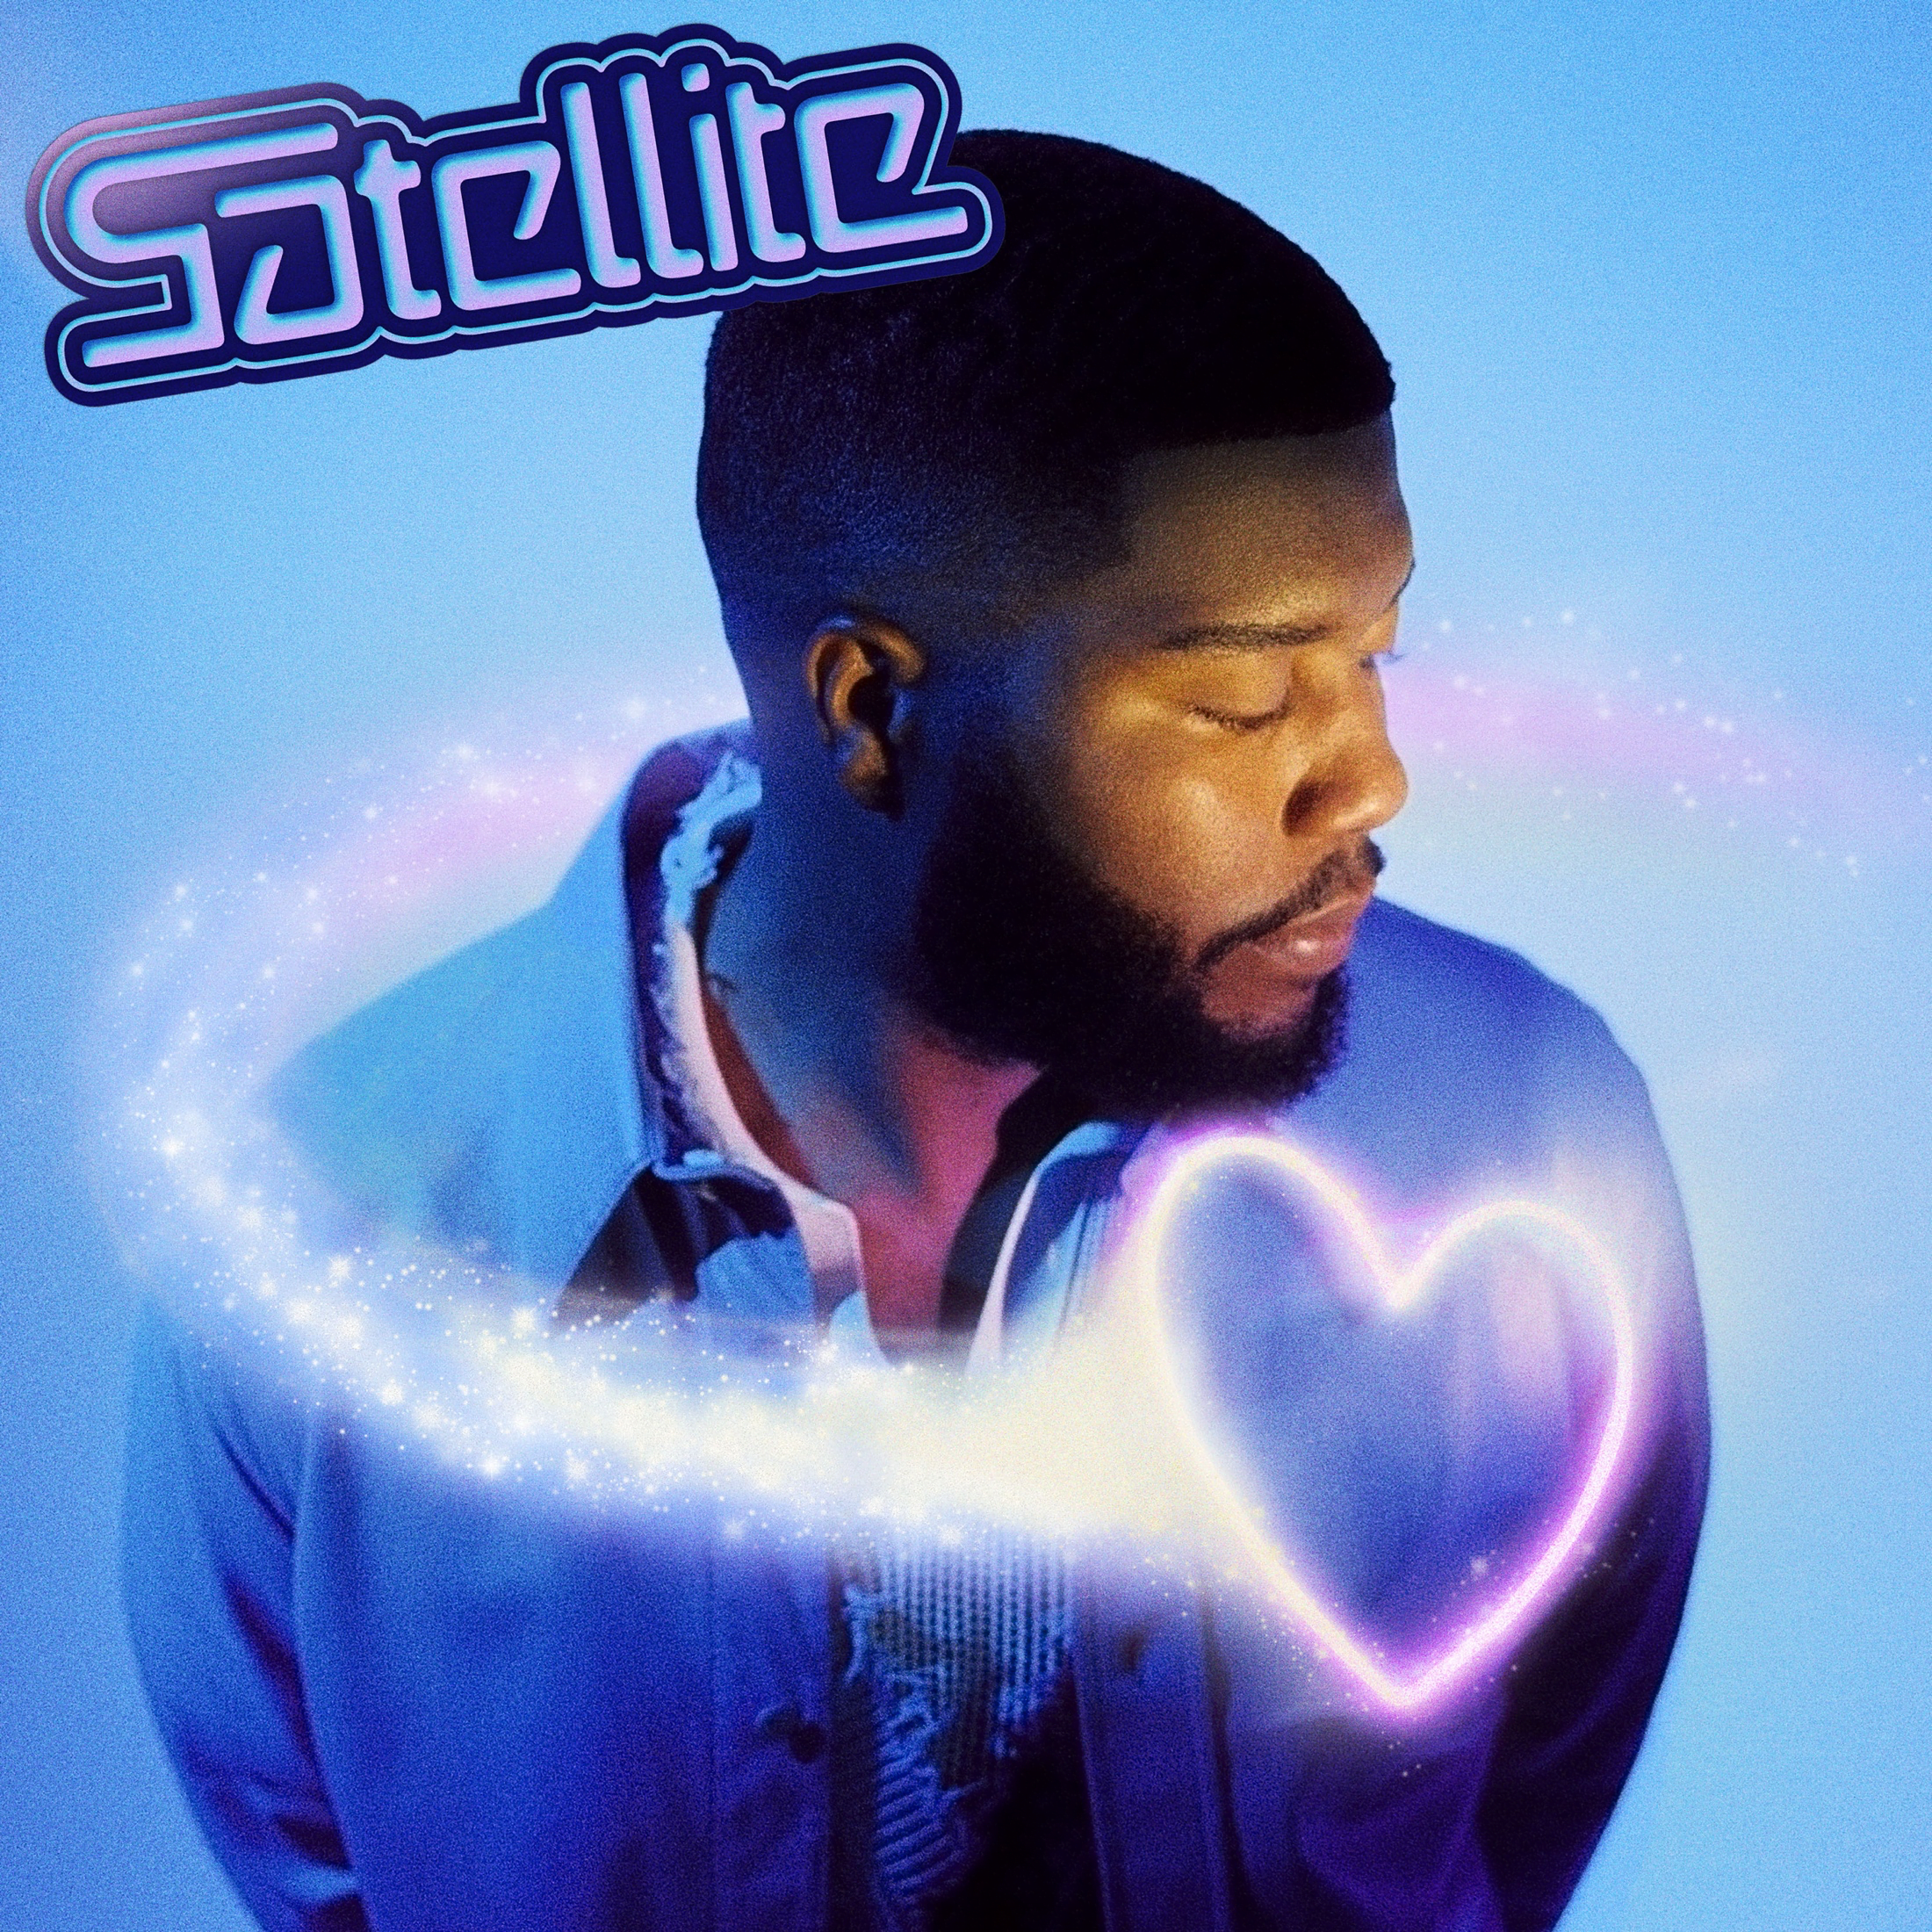 Khalid's New Single "SATELLITE" via 360 MAGAZINE